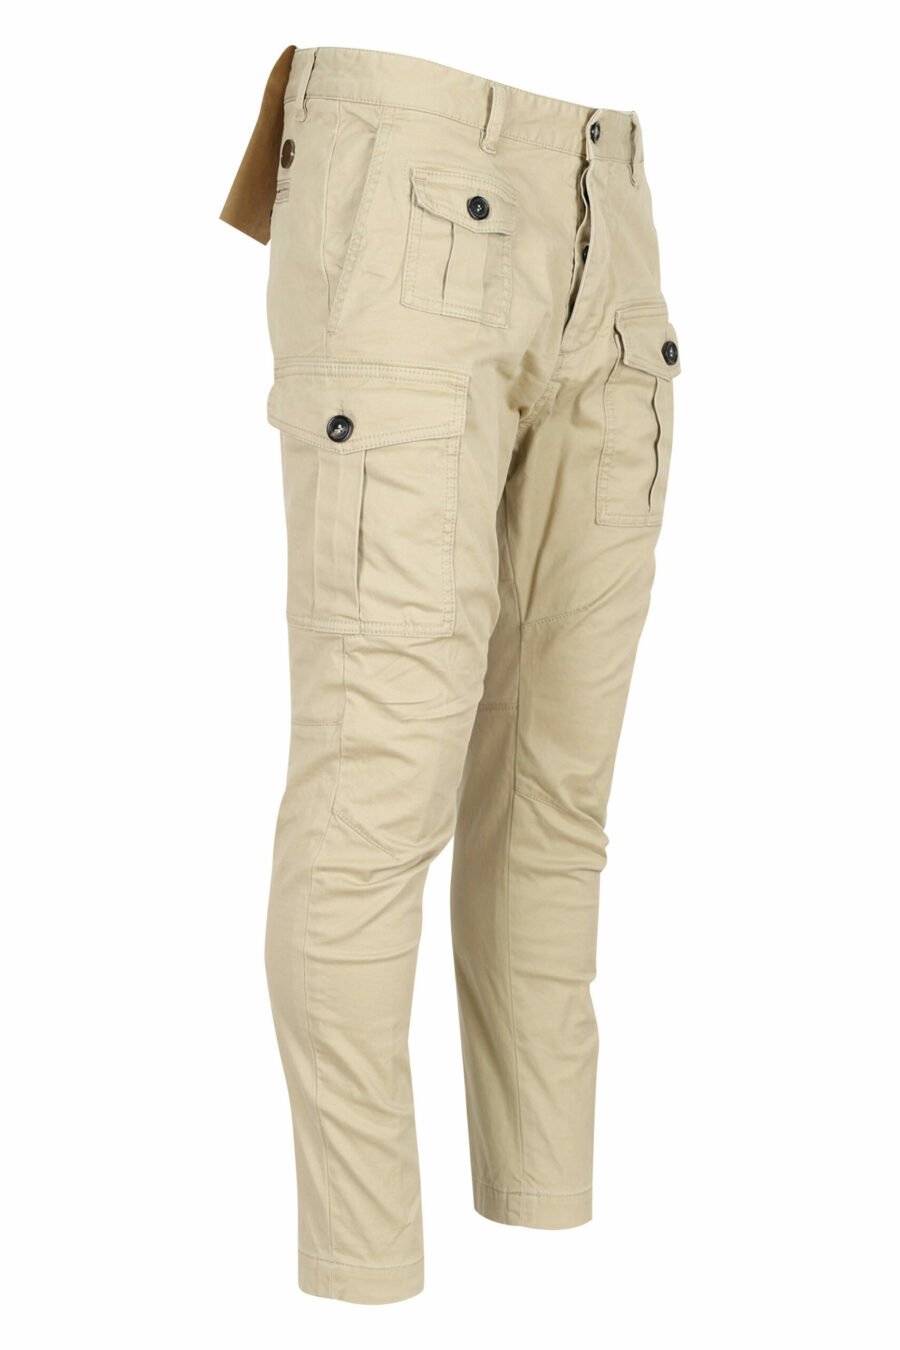 Pantalón "sexy cargo pant" beige con bolsillos laterales - 8052134973615 1 scaled